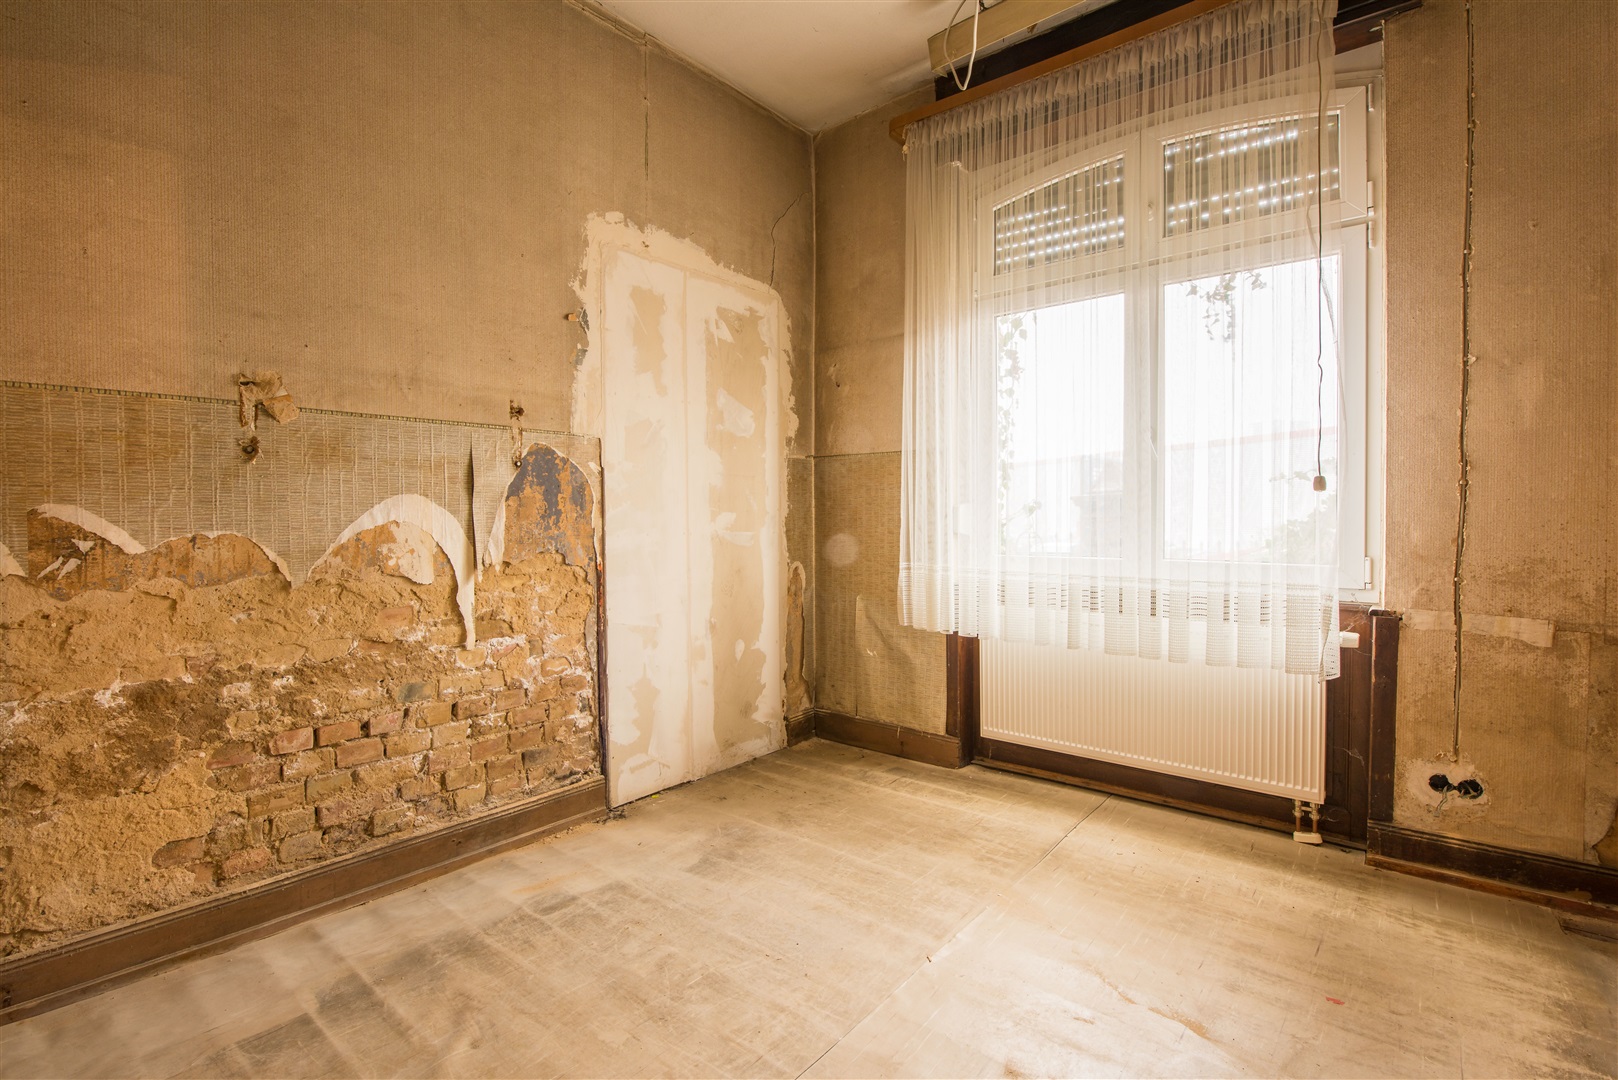 Das kleine Zimmer im EG ist ordentlich renovierungsbedürftig. Die Wand ist feucht und der Strom muss hier überarbeitet werden - Oliver Reifferscheid - Immobilienmakler Darmstadt